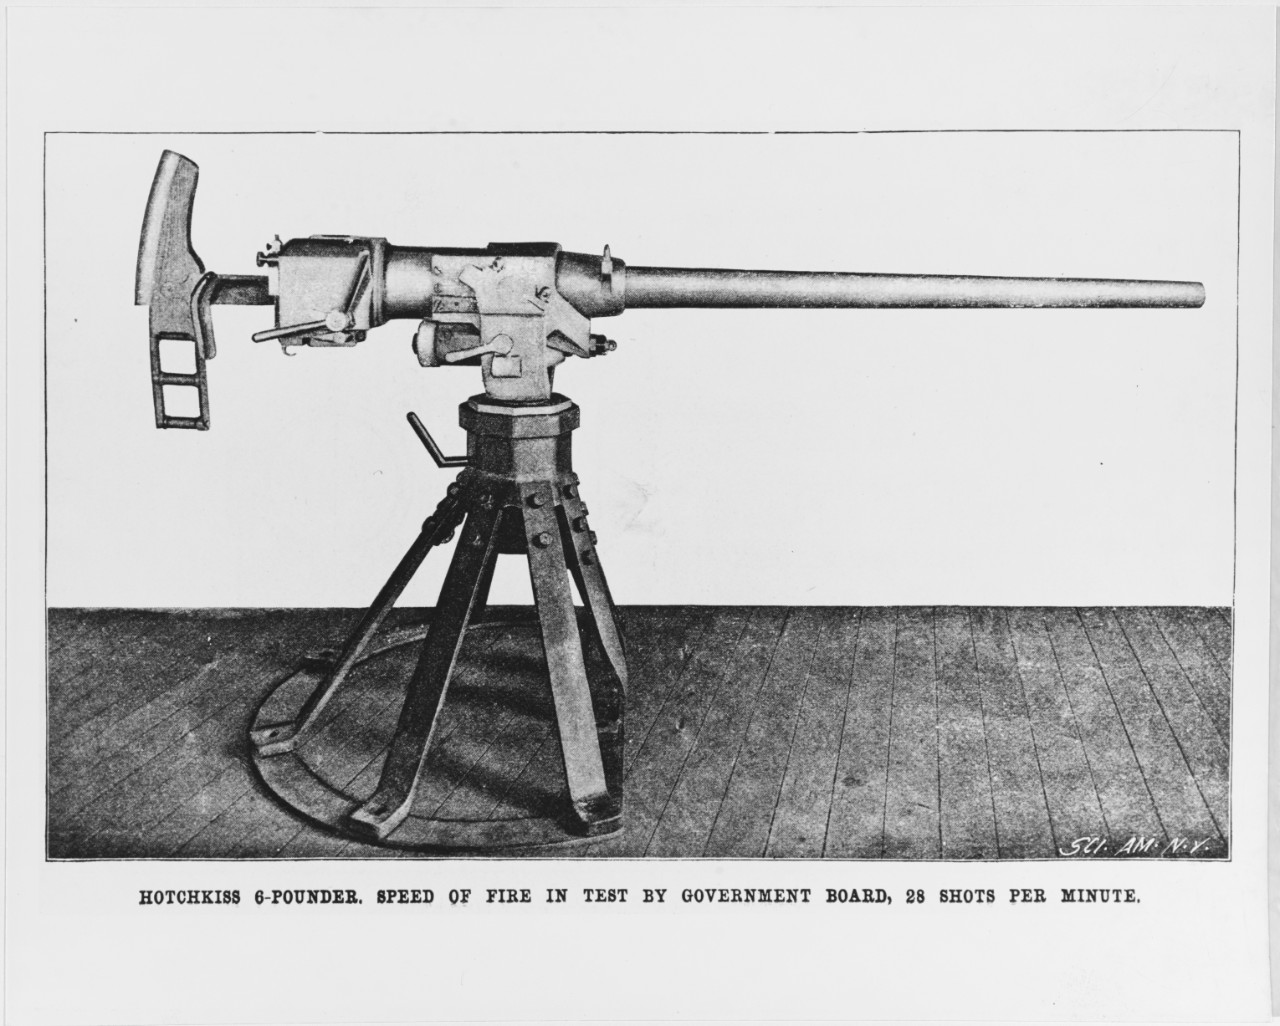 Hotchkiss six-PDR. rapid fire gun